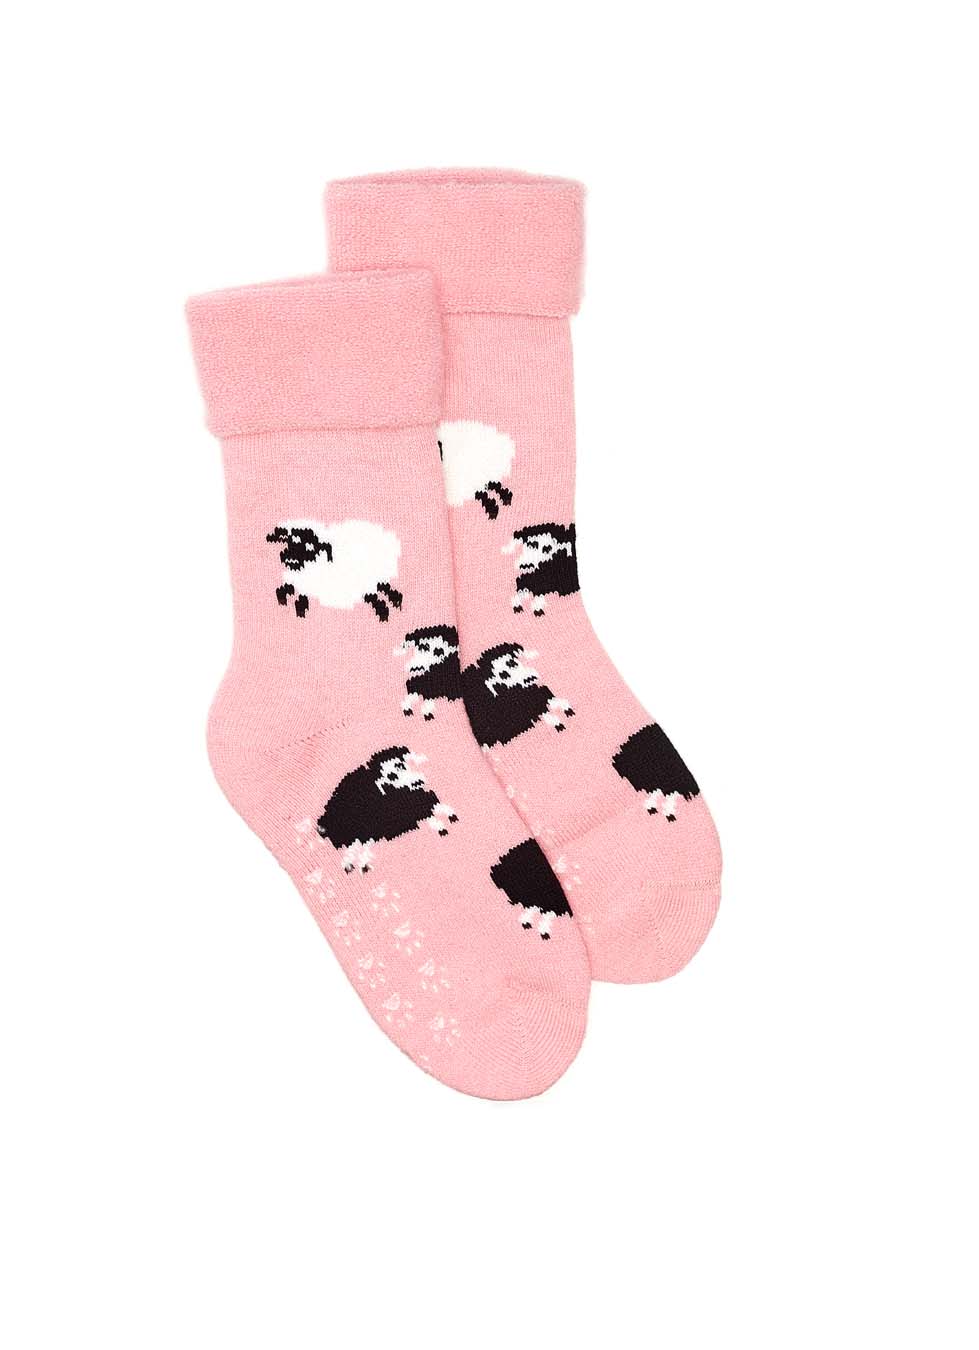 Sheep Bed Socks - Pink